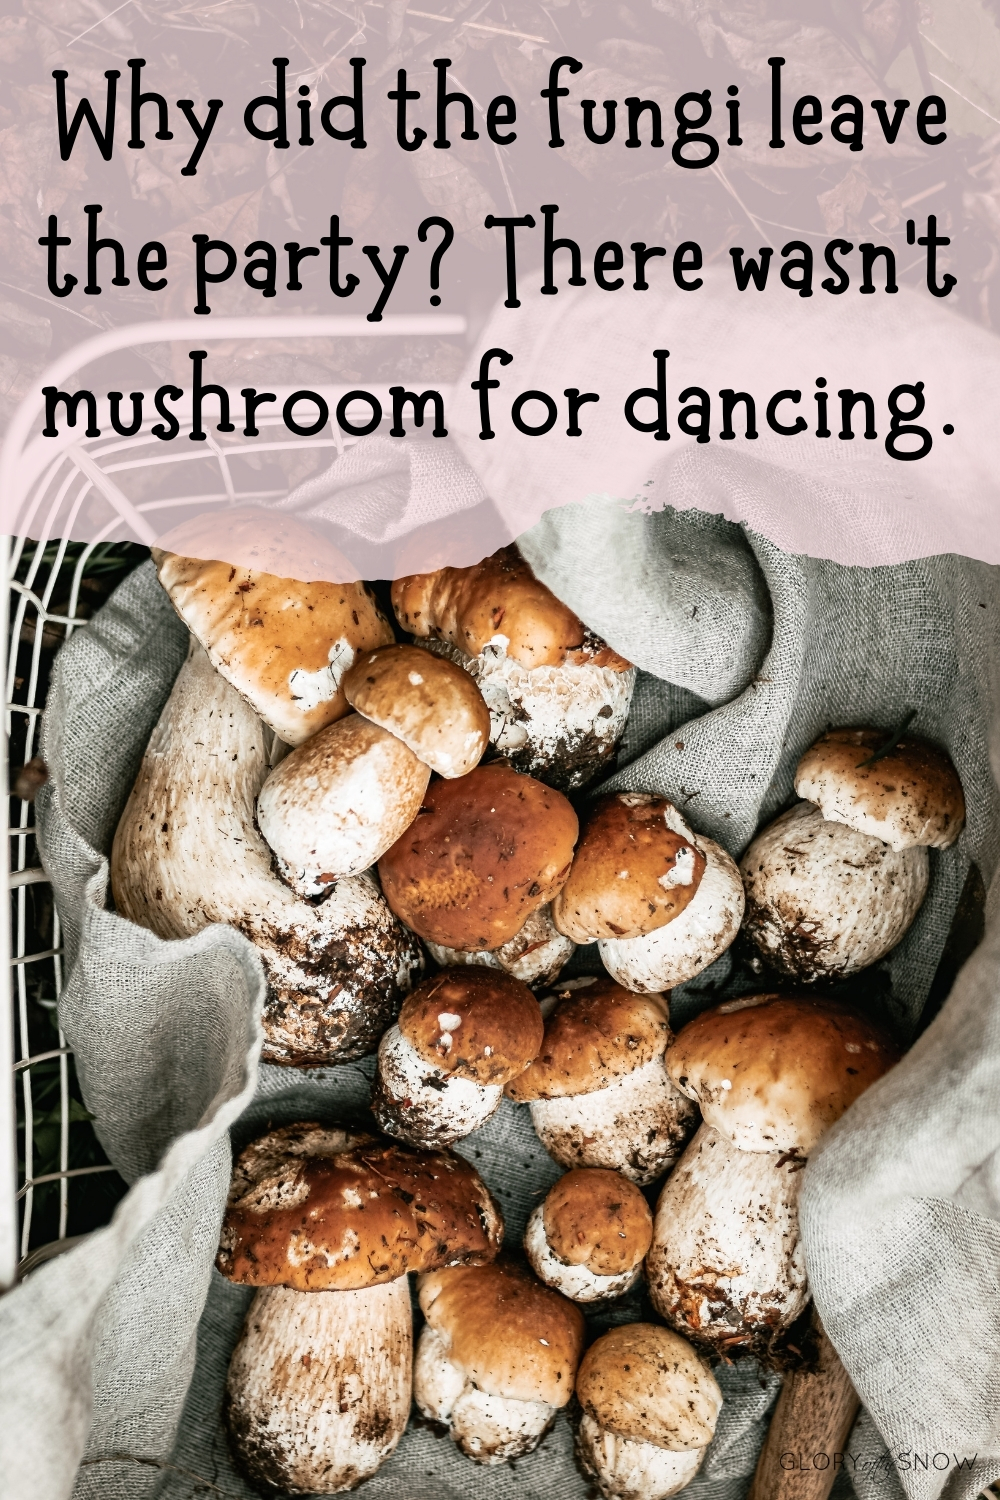 mushroom puns and jokes